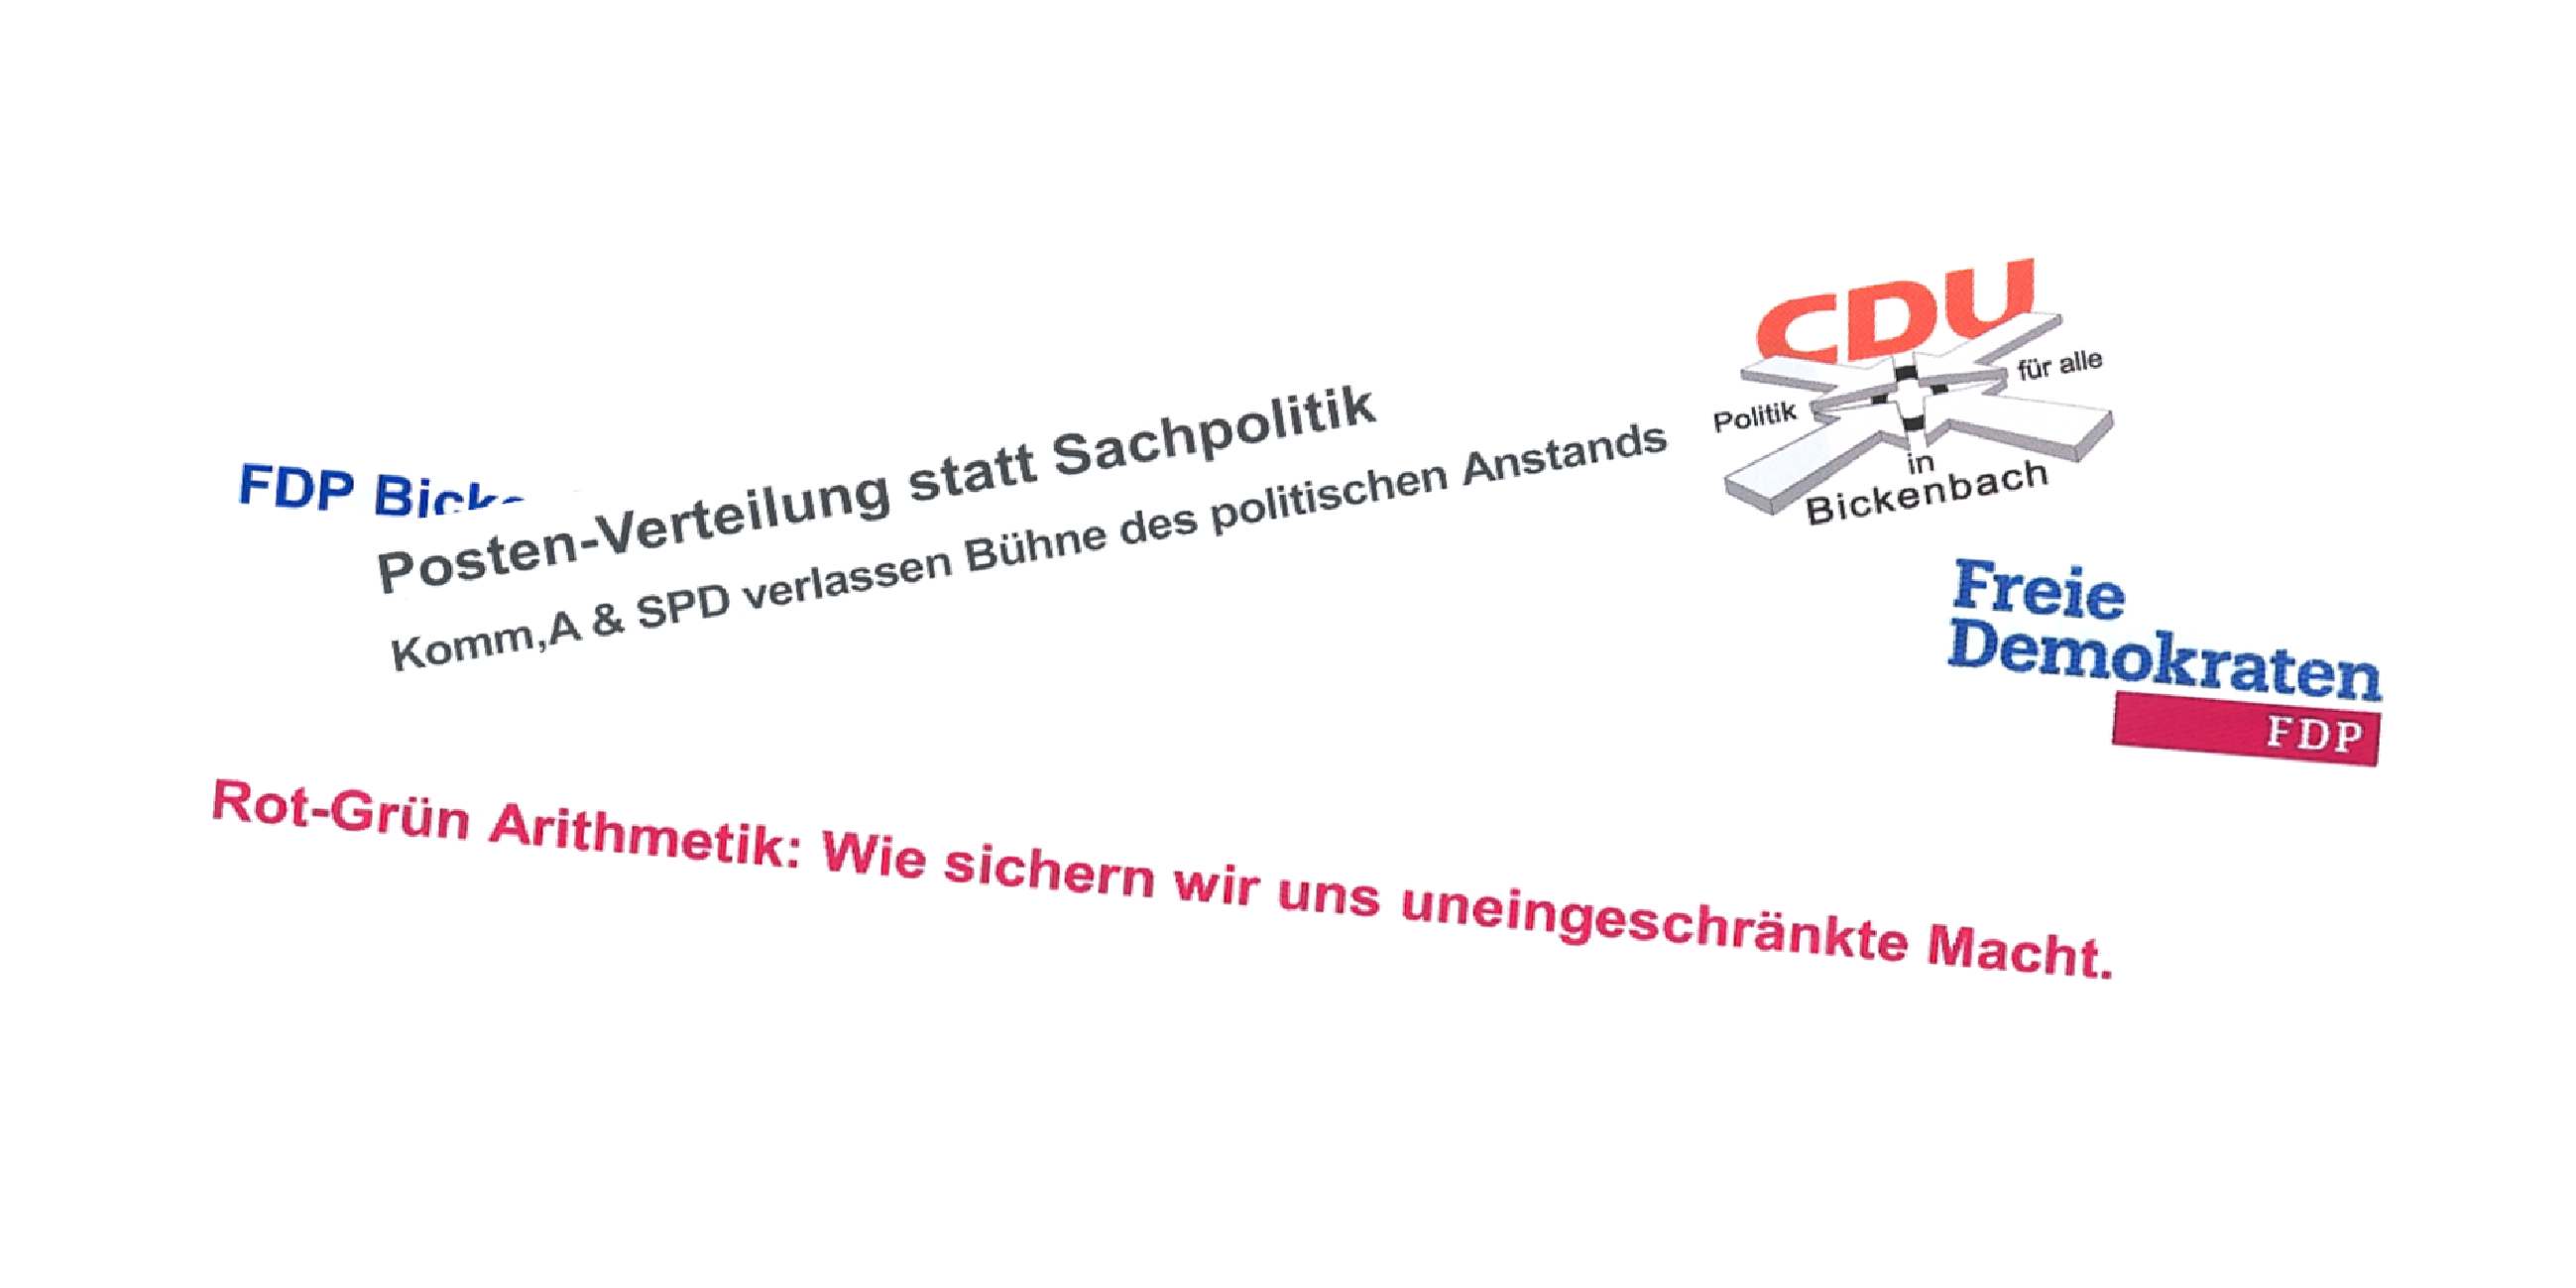 Titel CDU FDP